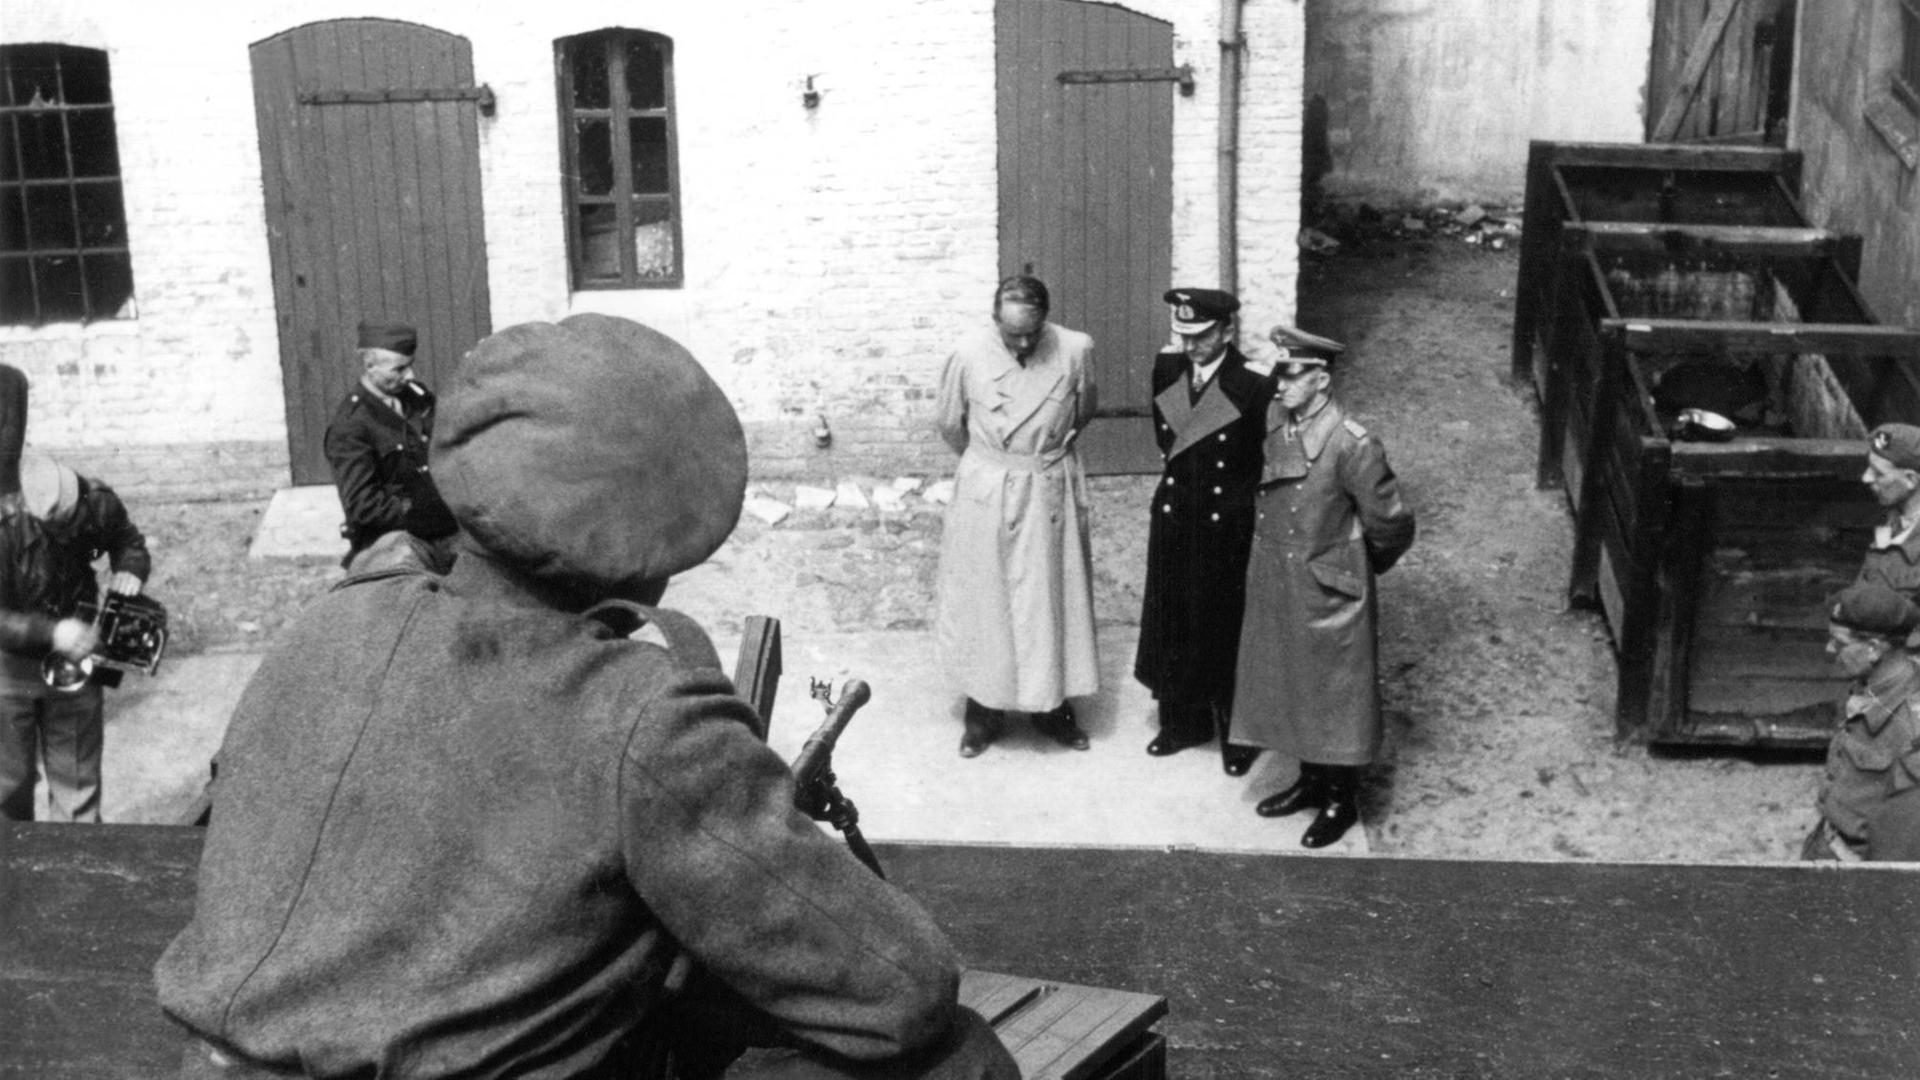 Albert Speer, Karl Dönitz und Alfred Jodl stehen in Trenchoats und Uniformen in einem Hof, umringt von britischen Soldaten, von denen zwei eine Kamera aufstellen. Aufgenommen ist das Bild von einem Dach aus, auf dem ein Soldat mit einem Gewehr im Anschlag kauert.